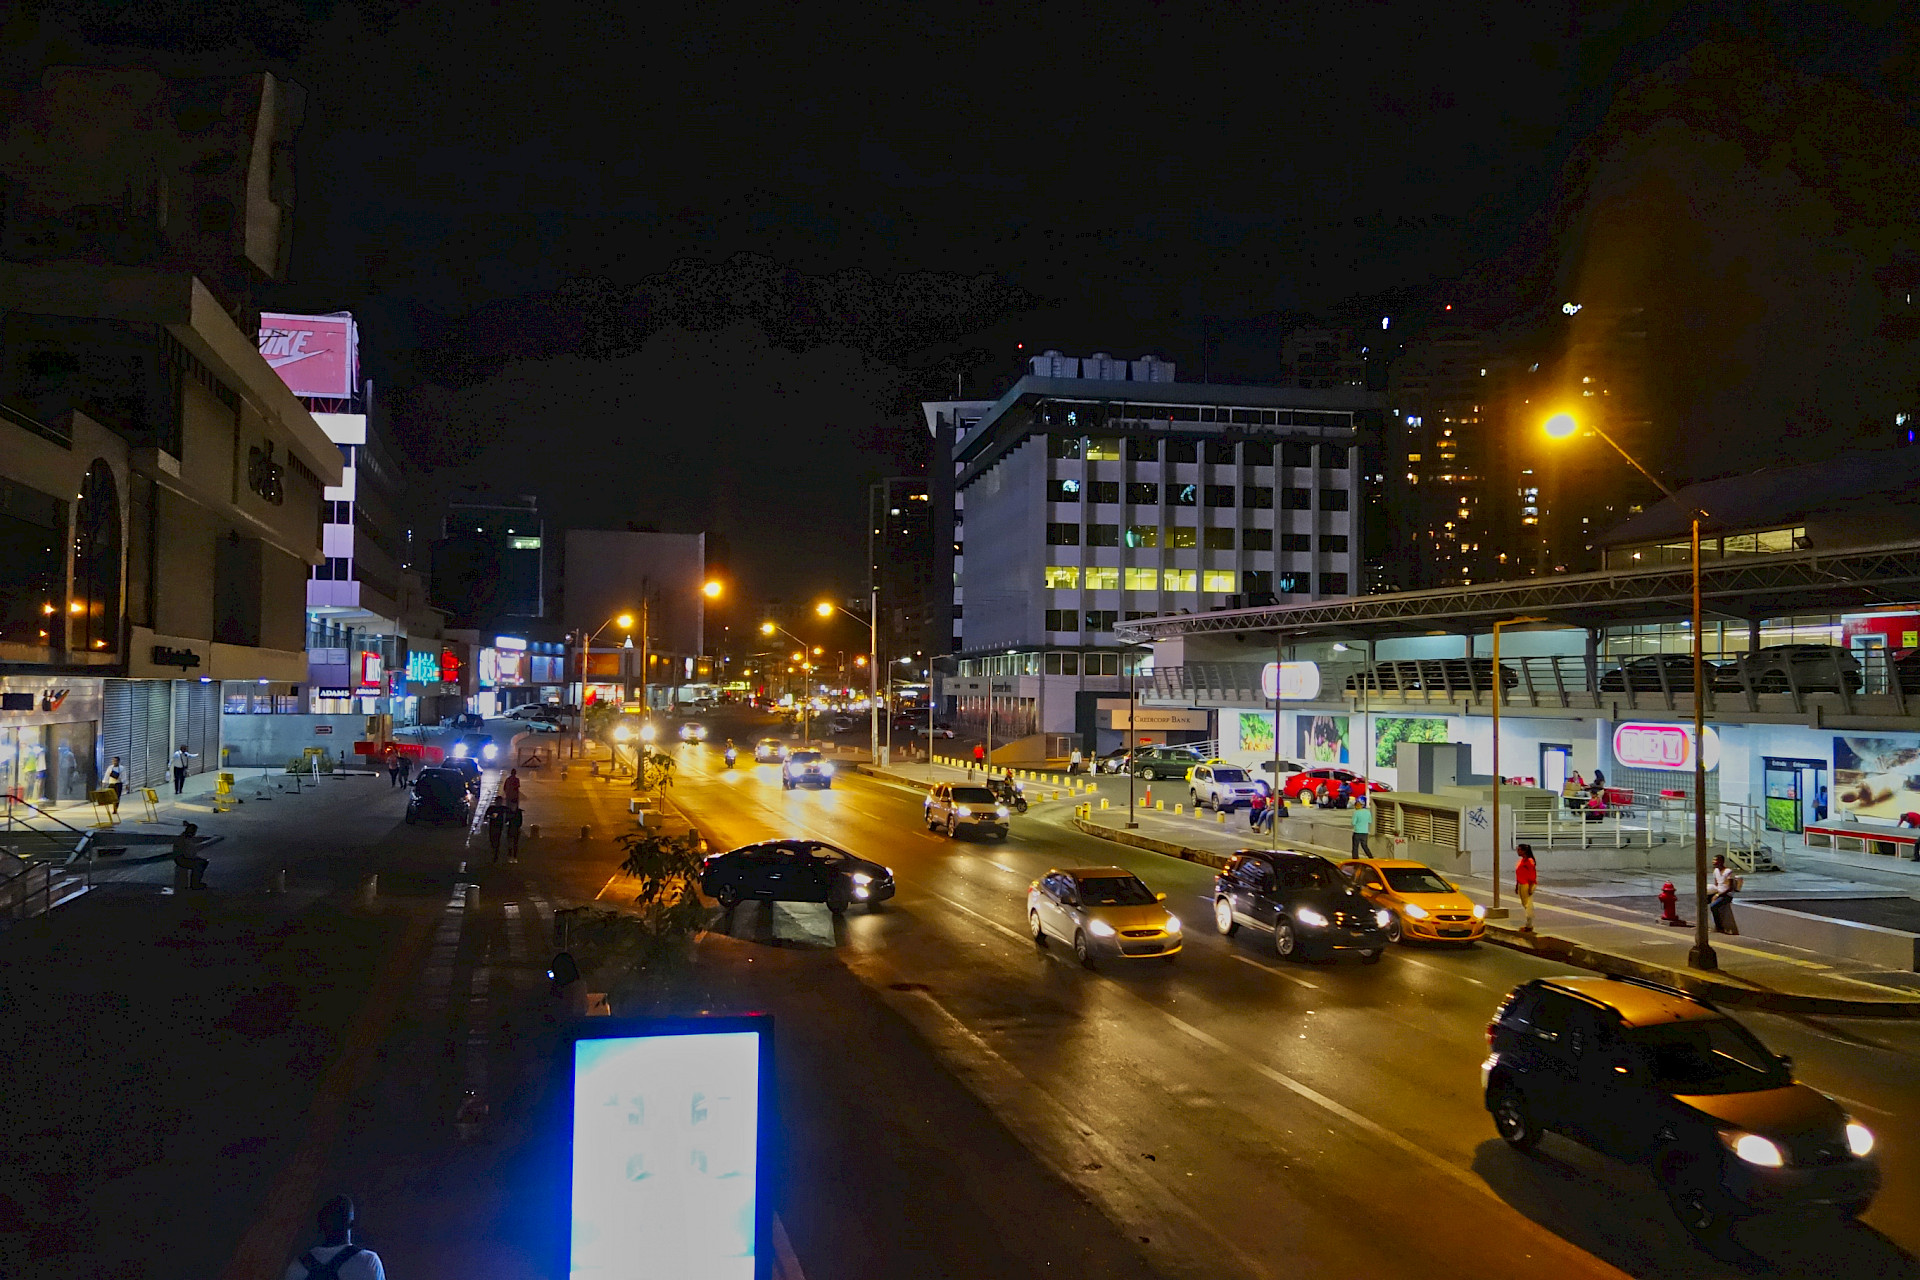 En esta fotografía nocturna de la vía españa. De la ciudad de Panamá. Se aprecia el supermercado Rey, Office Depot, Collins, Nike, Ben Betesh. Principalmente